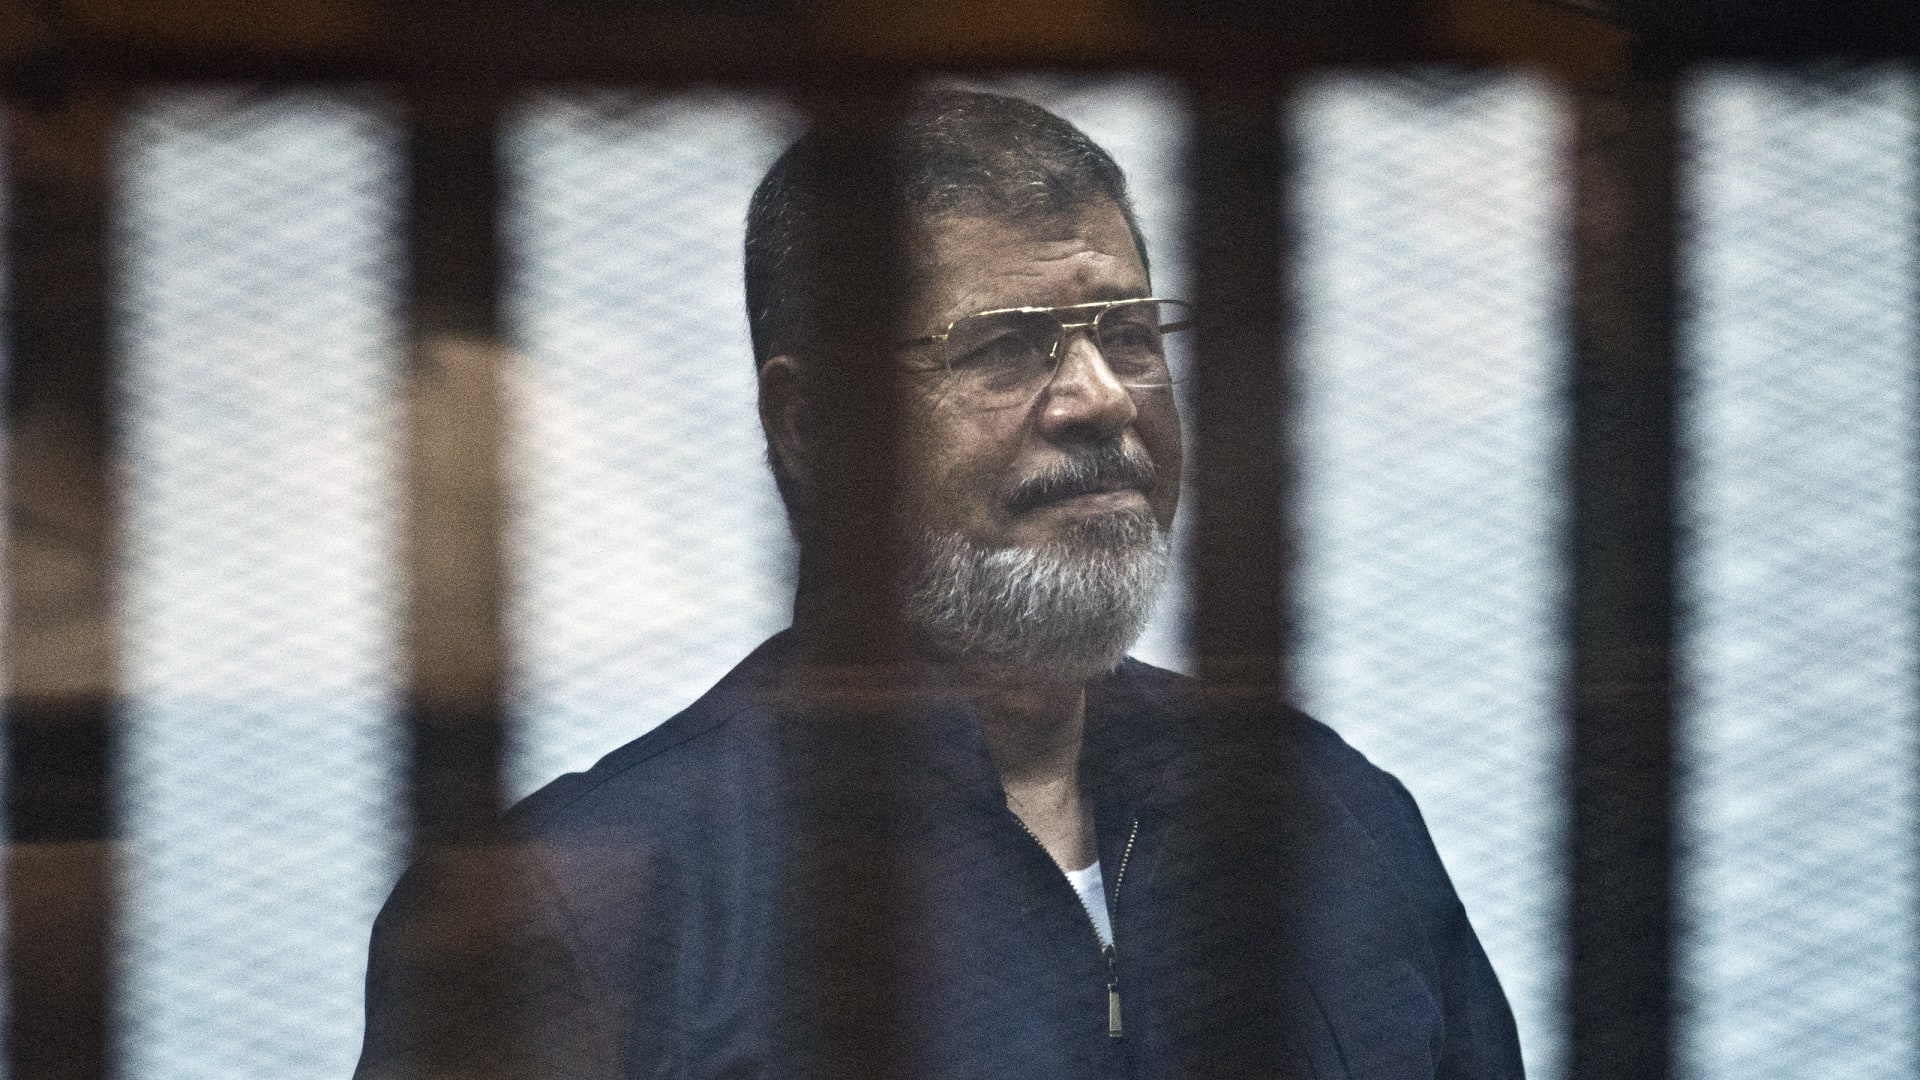 مصر.. أسرة الرئيس المصري الراحل محمد مرسي ترد على أنباء عن محاولة انتحار نجله أسامة في السجن